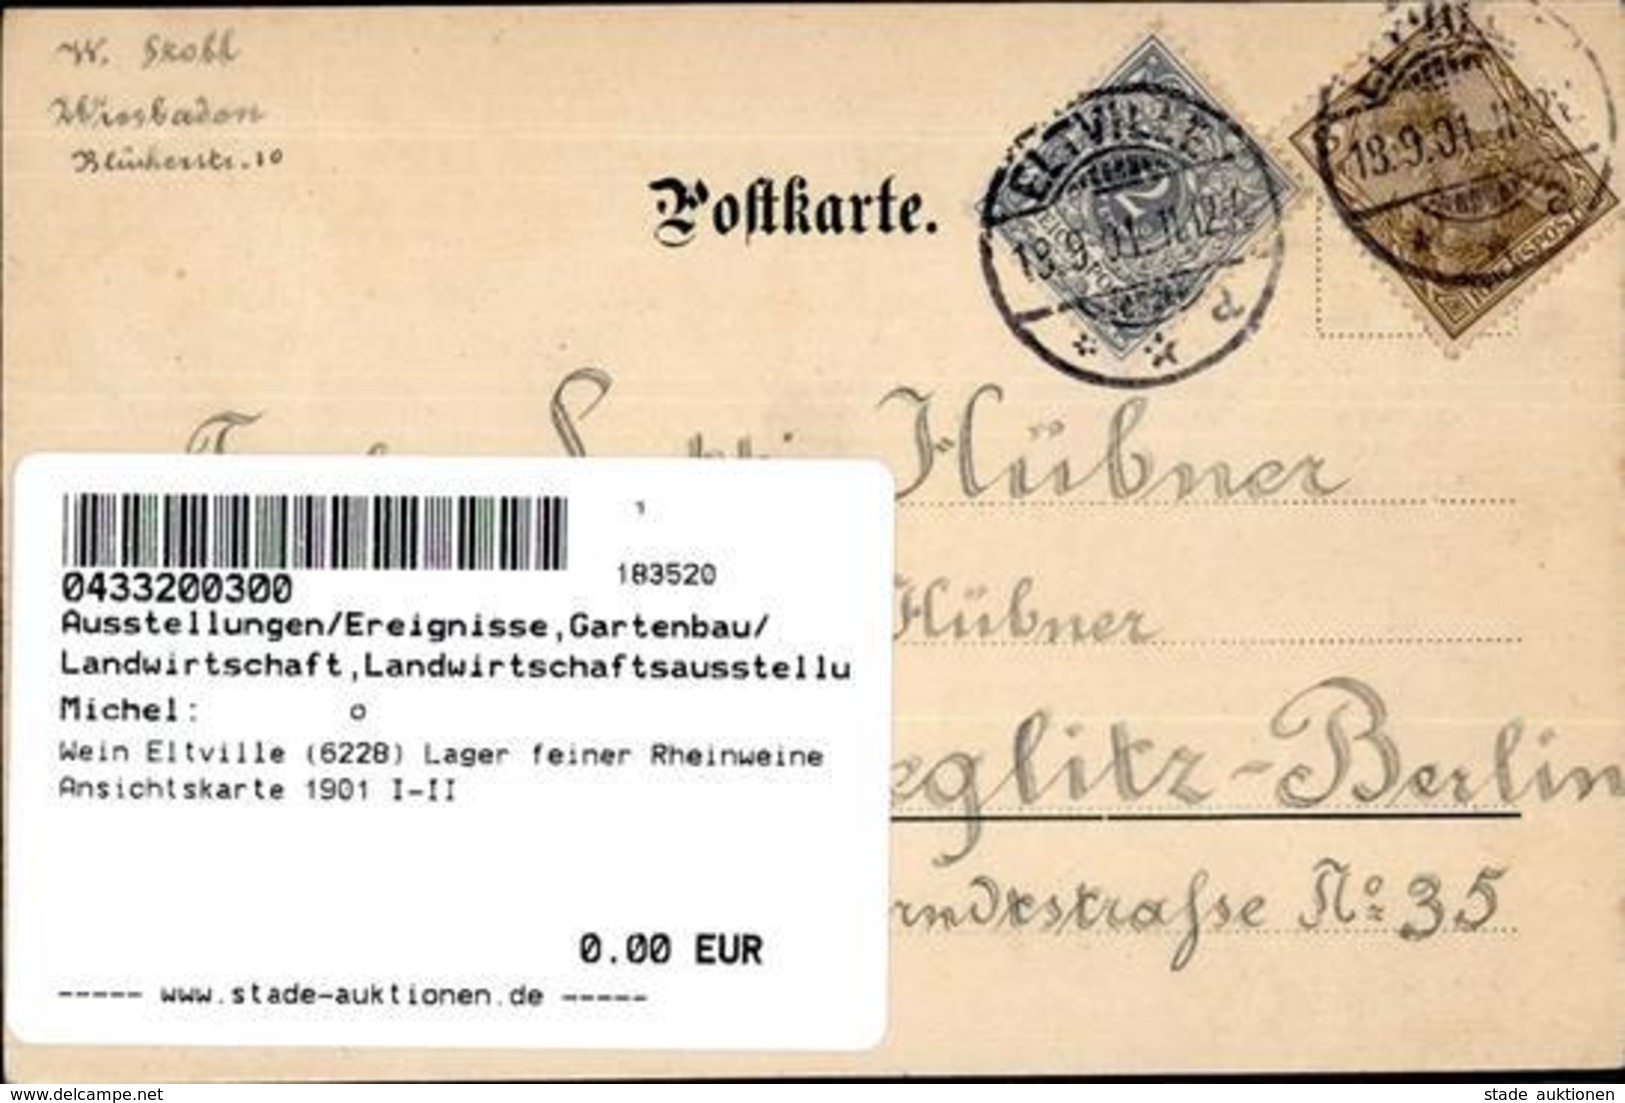 Wein Eltville (6228) Lager Feiner Rheinweine Ansichtskarte 1901 I-II Vigne - Ausstellungen